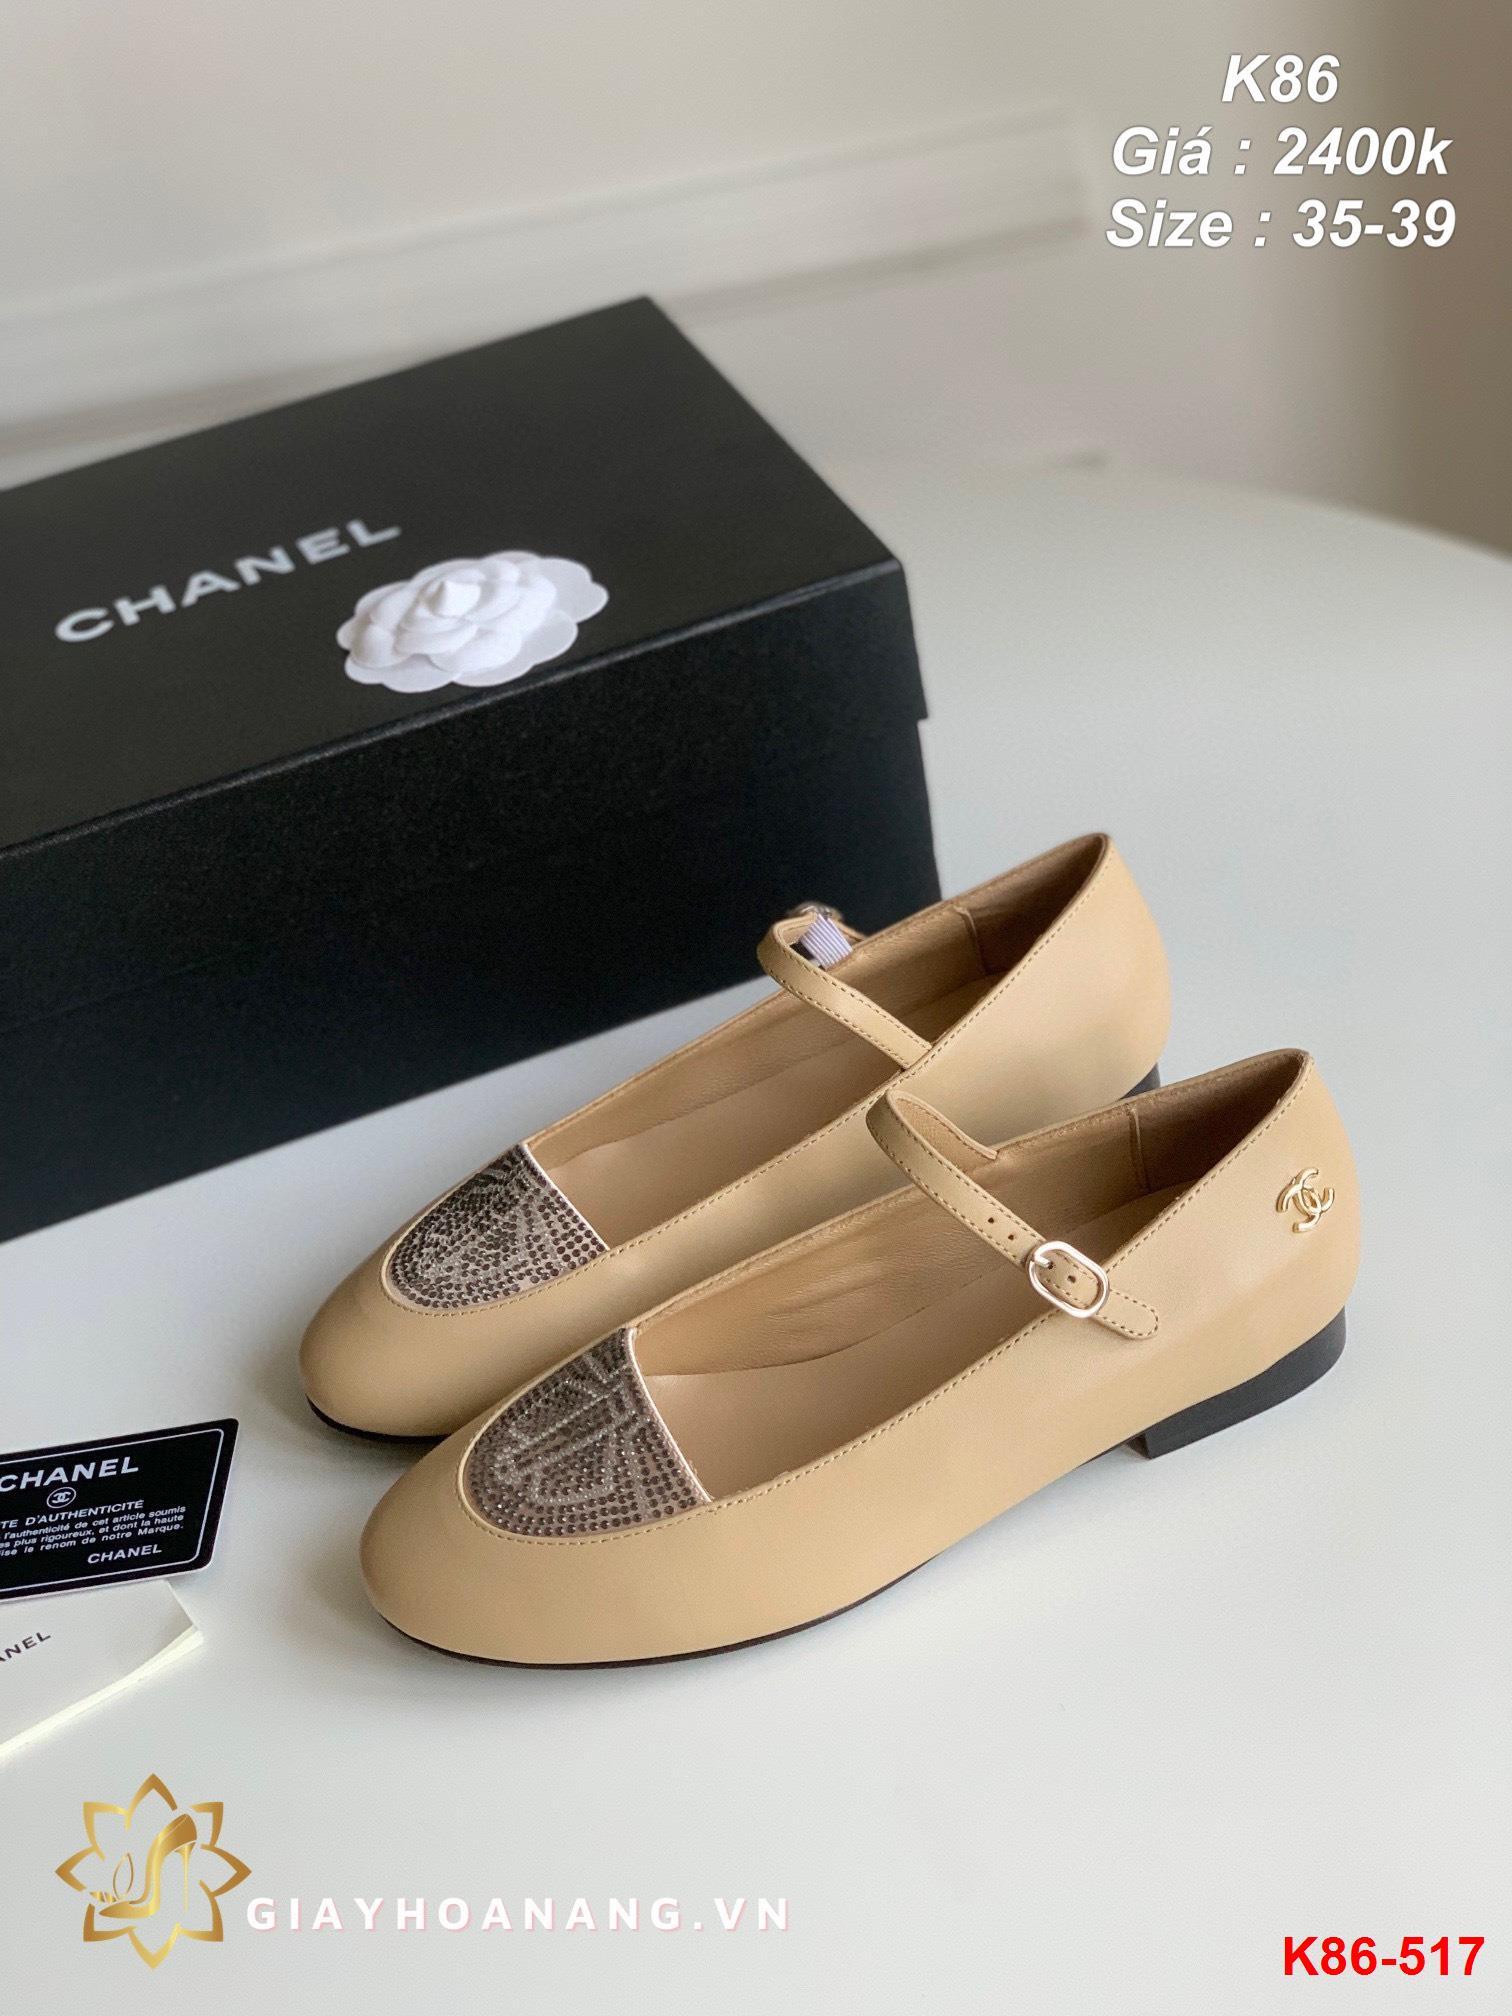 K86-517 Chanel giày bệt siêu cấp